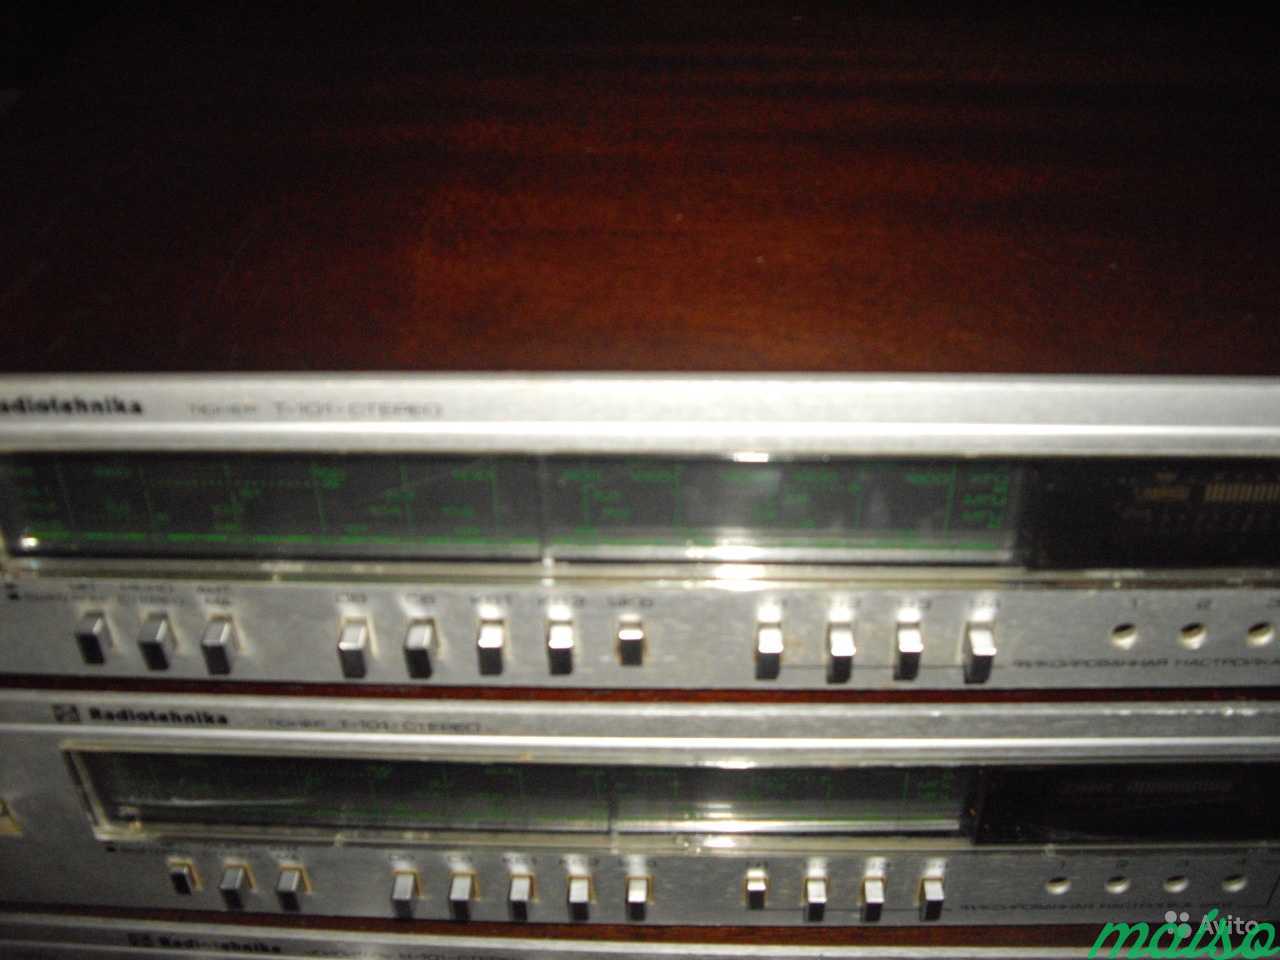 Радиотехника Т 101стерео с диапазоном 87,5-108 Мгц в Санкт-Петербурге. Фото 2